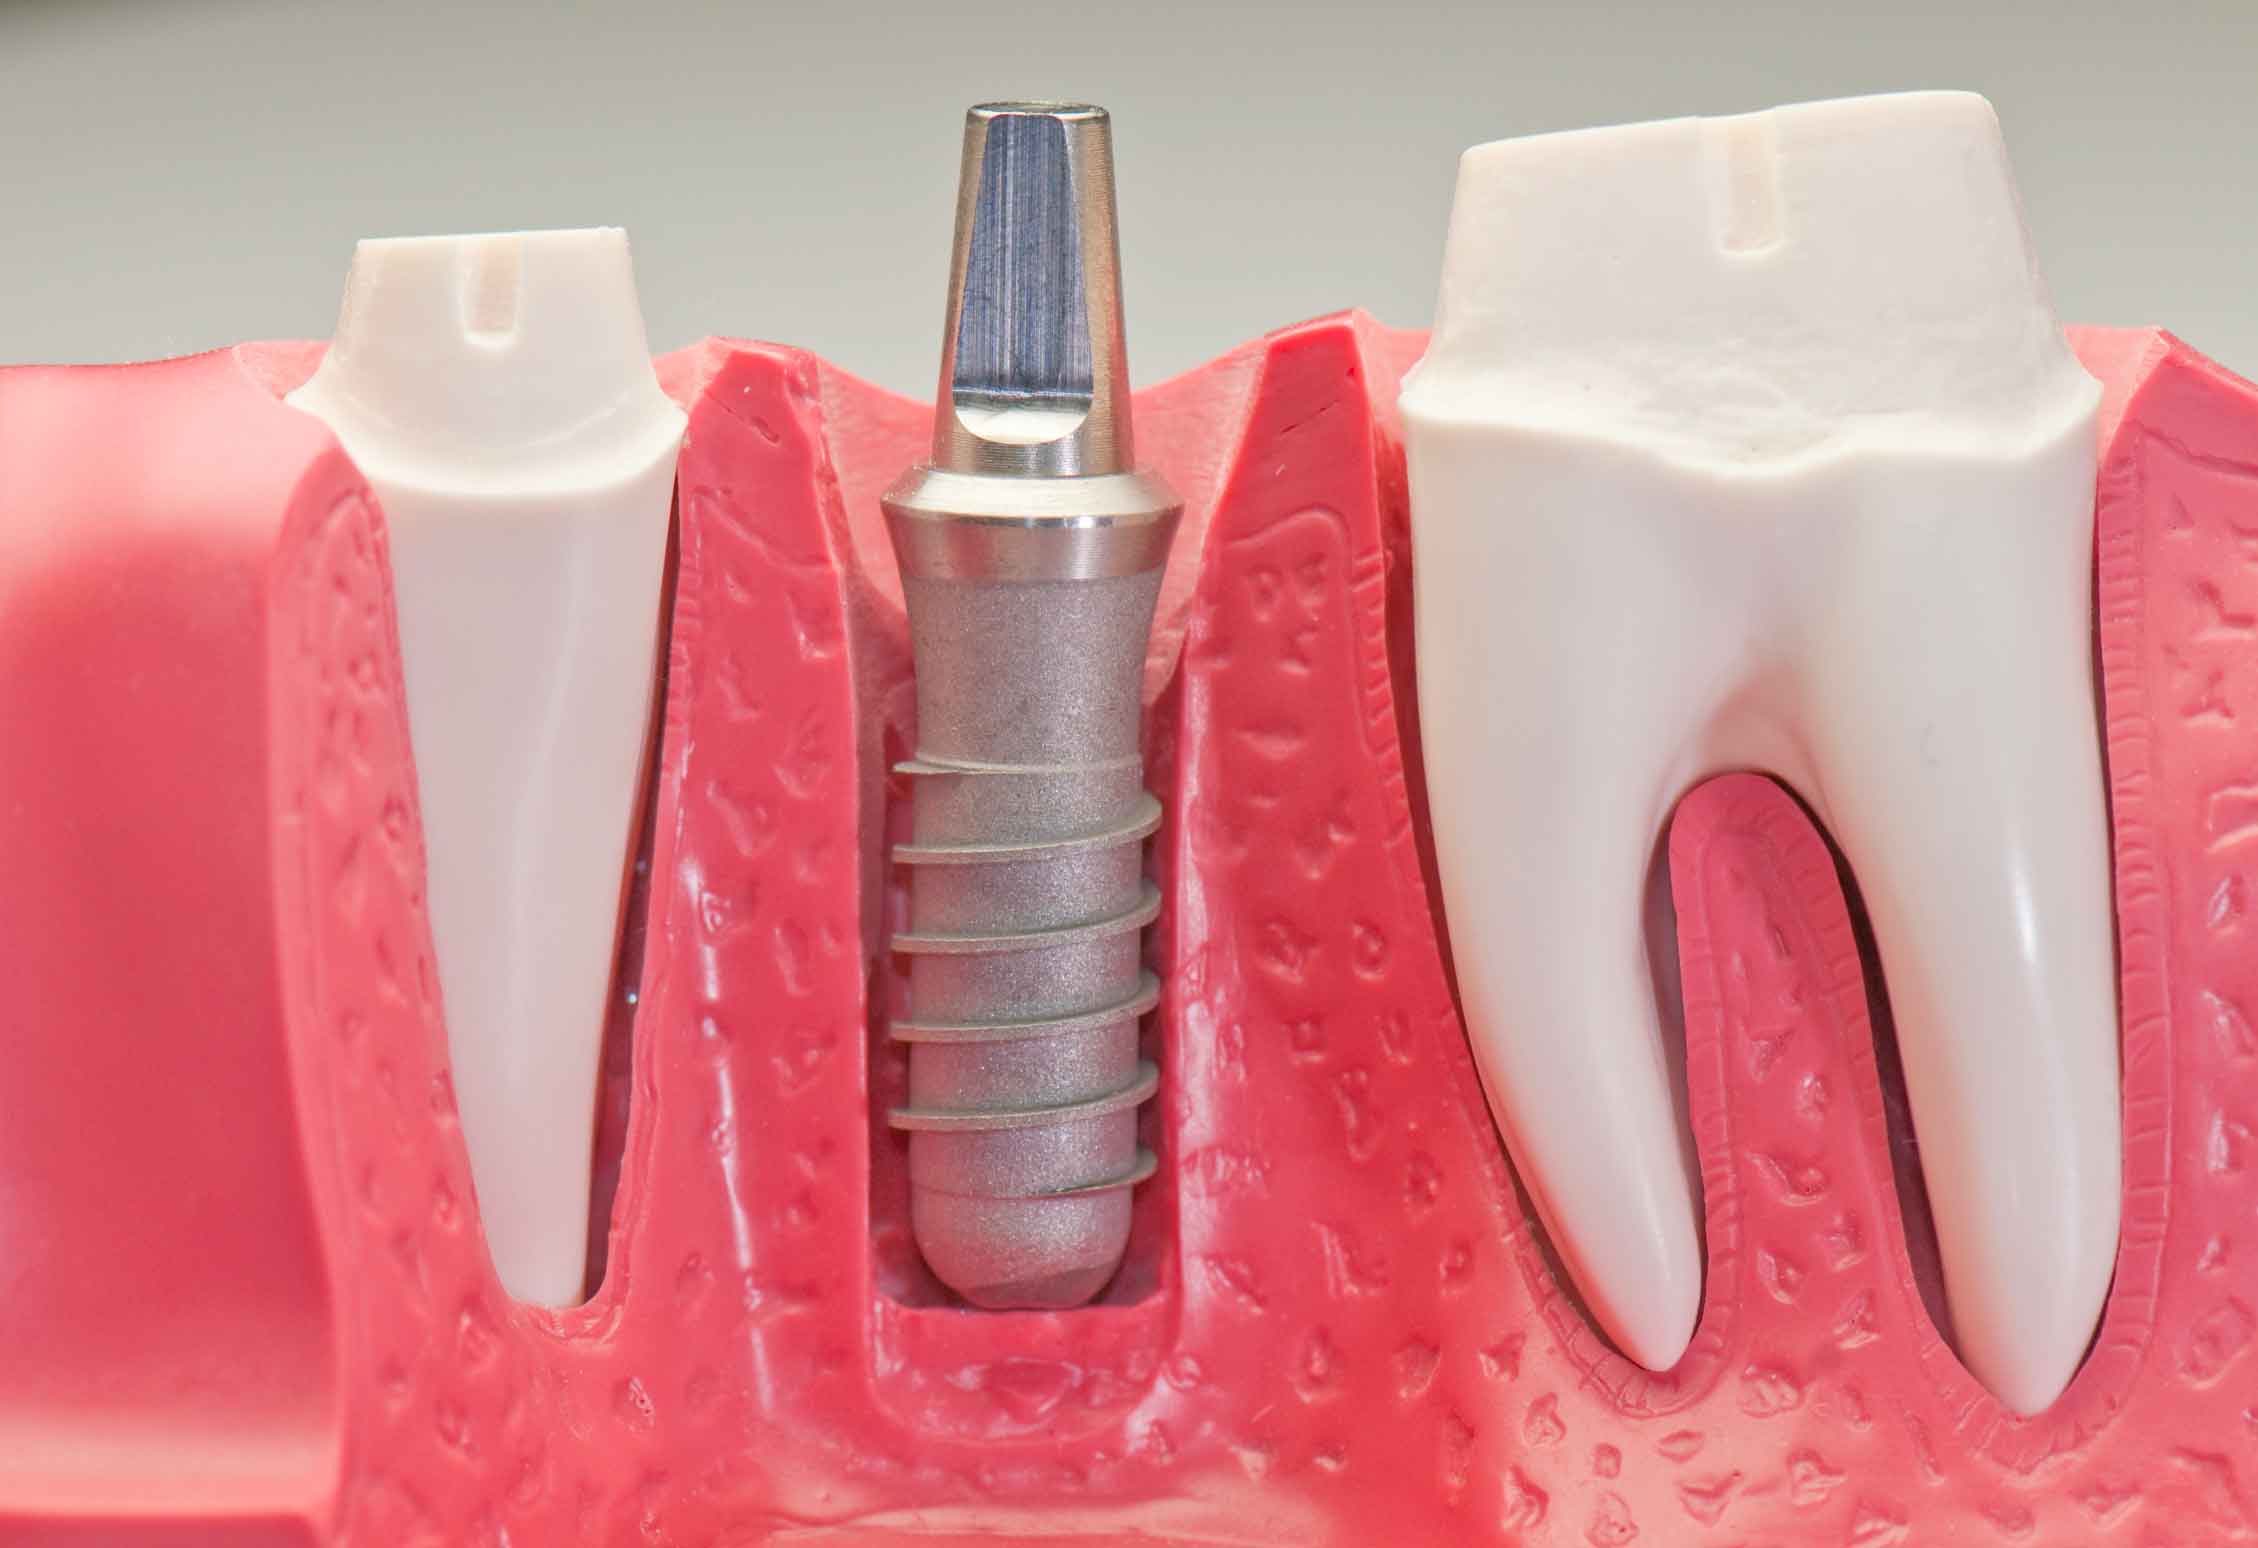 Dental implantlar diş eksikliklerinde, kaybedilen diş ya da dişleri yerine koymak için çene kemiğine yerleştirilen vida formunda yapay köklerdir. İmplant hangi durumlarda yapılır? - İmplant yapımı ağrılı mıdır? - Kimler implant yaptırabilir? - Her diş hekimi implant yapabilir mi? - İmplant tedavisi ne kadar sürer? - İmplant markası önemli midir? - İmplantlar metal dedektöründe öter mi?